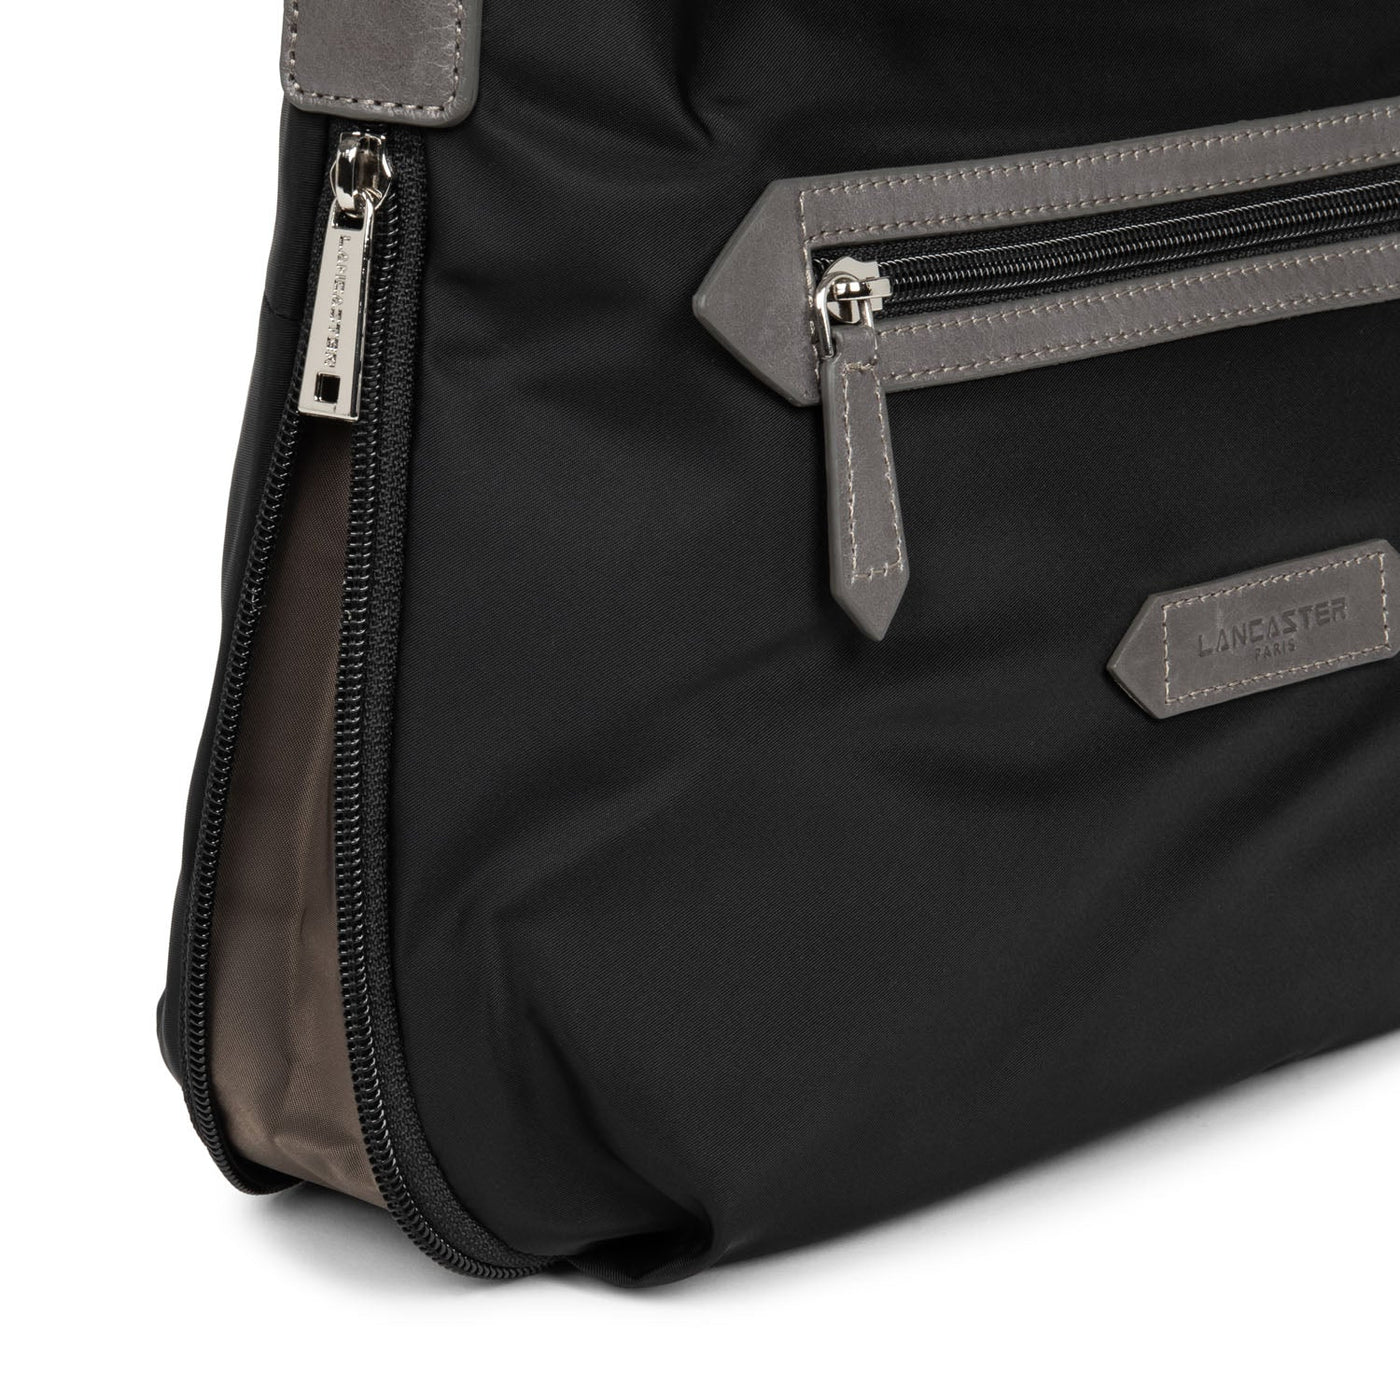 shoulder bag - basic sport #couleur_noir-taupe-galet